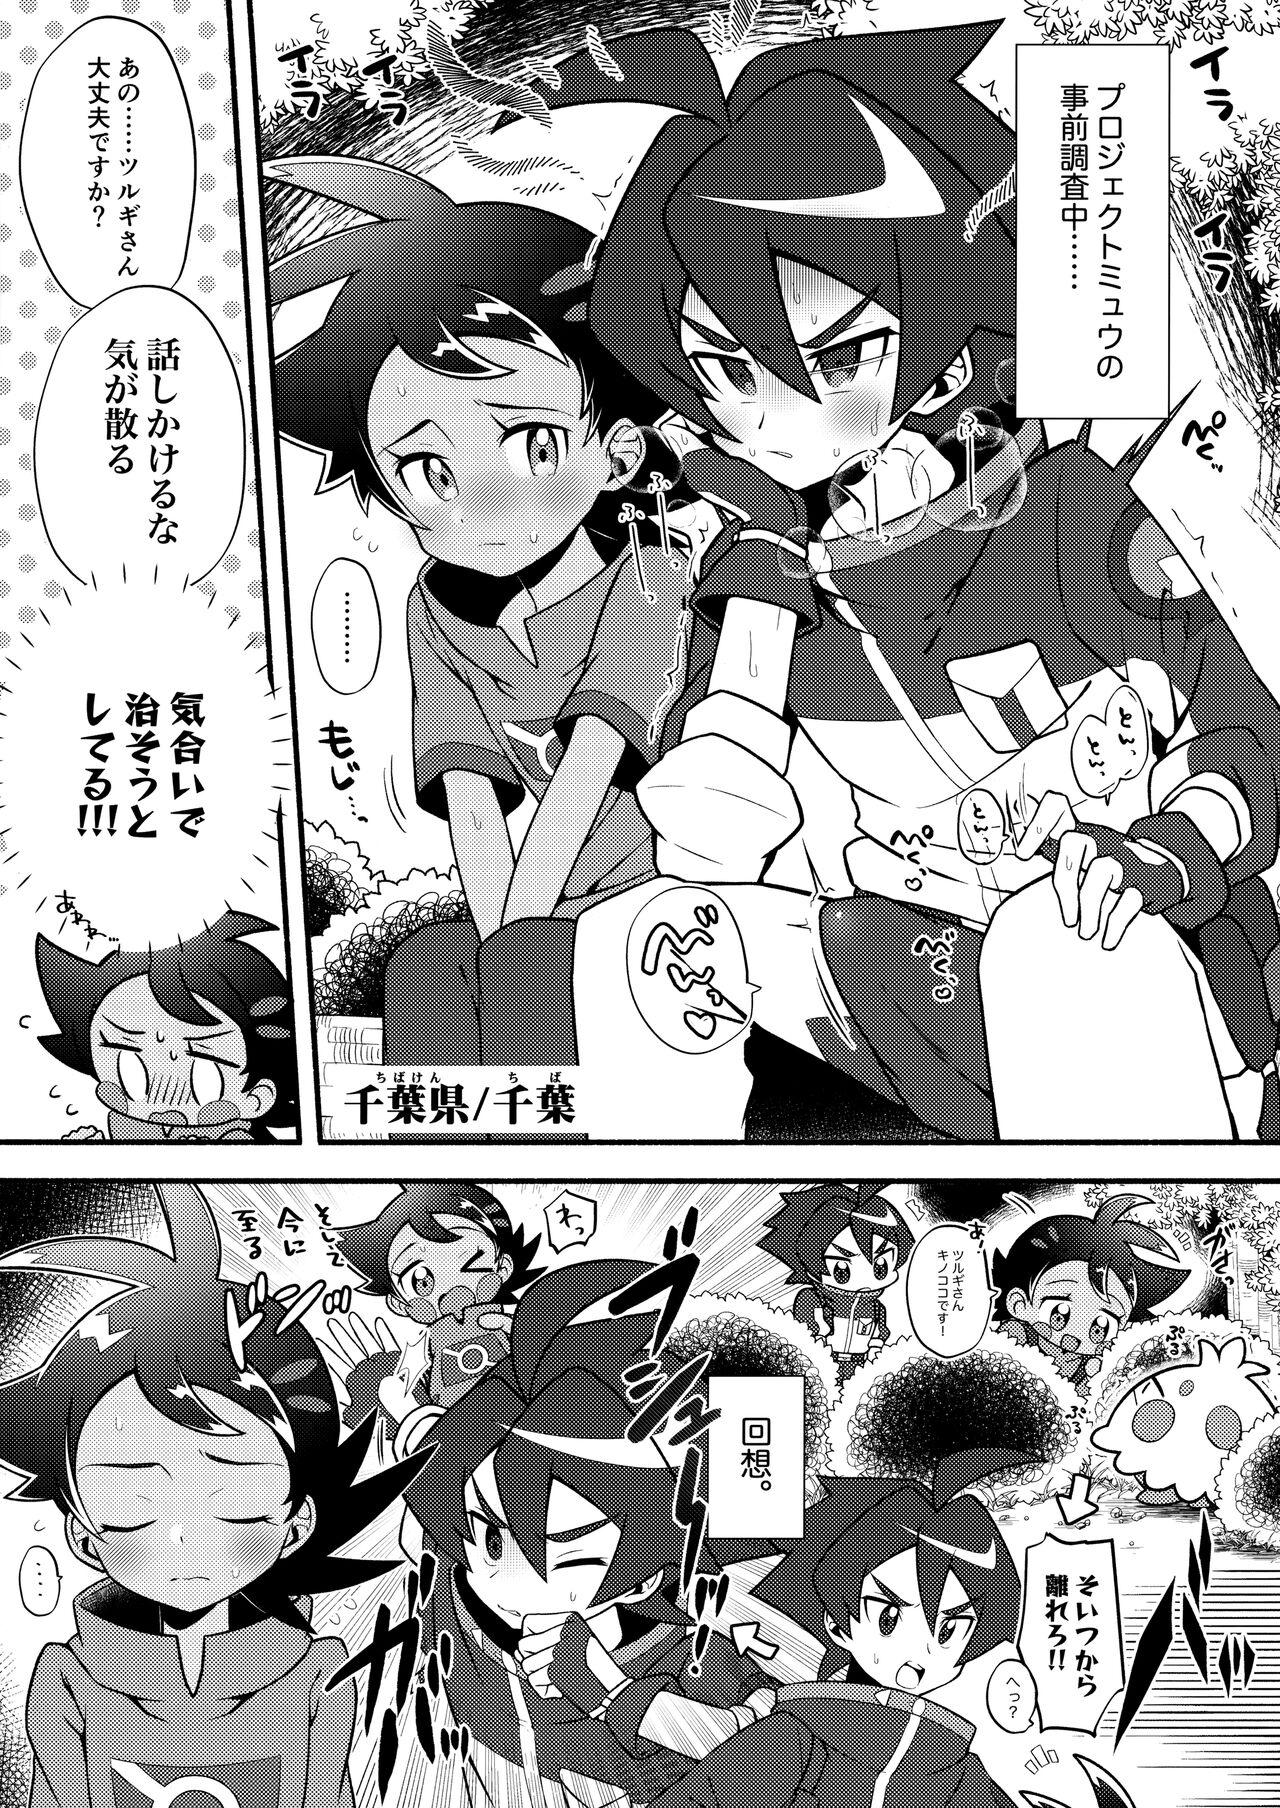 (ShotaFes12) [Chibaken, Shounen Scale, MILKBEE (Chiba, nico, 085)] Tsurugi-san to Goh-kun ga Kimeseku suru Goudoushi (Pokémon Journeys) 1